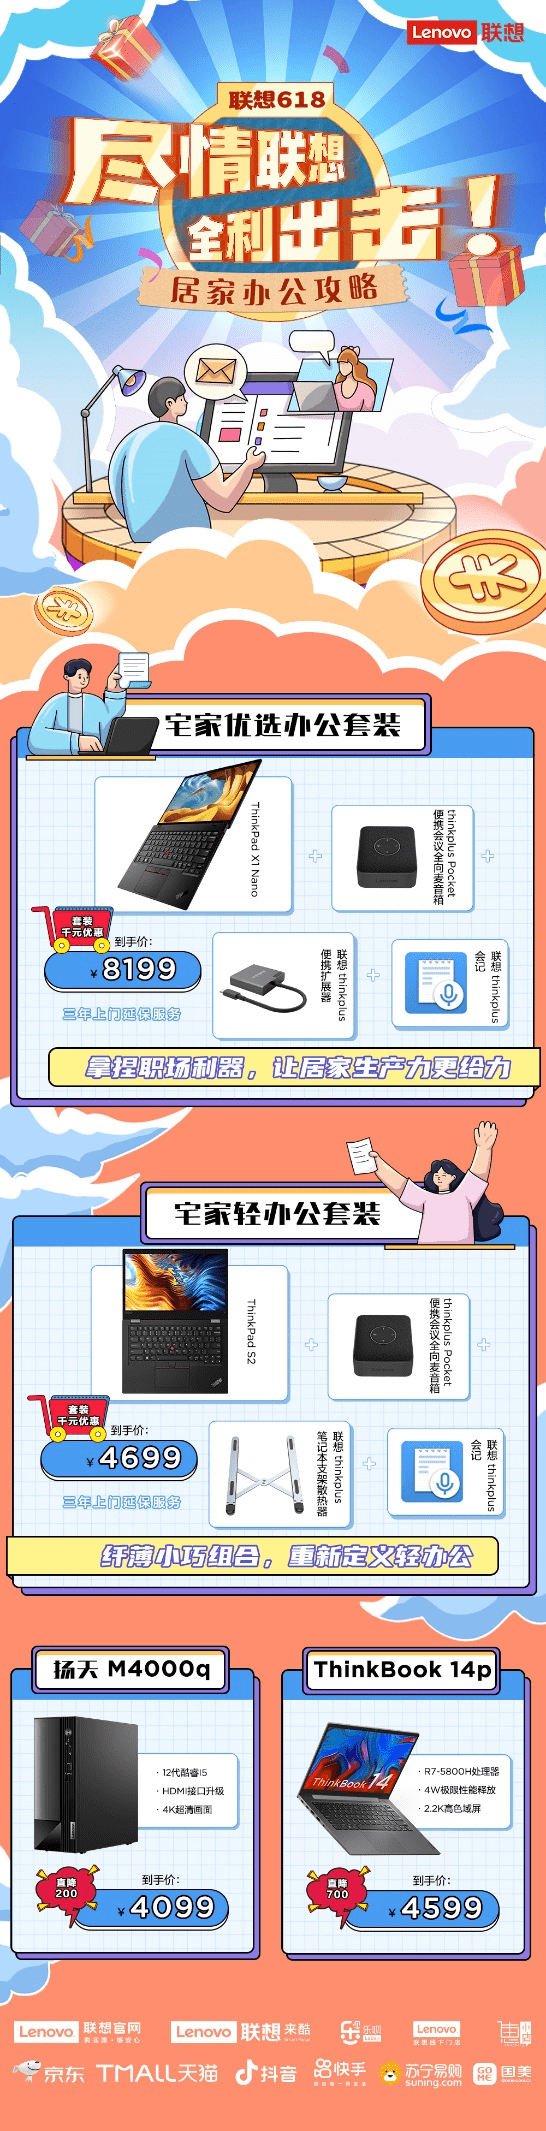 联想618换新，907g的ThinkPad X1 Nano让你在家办公更轻松